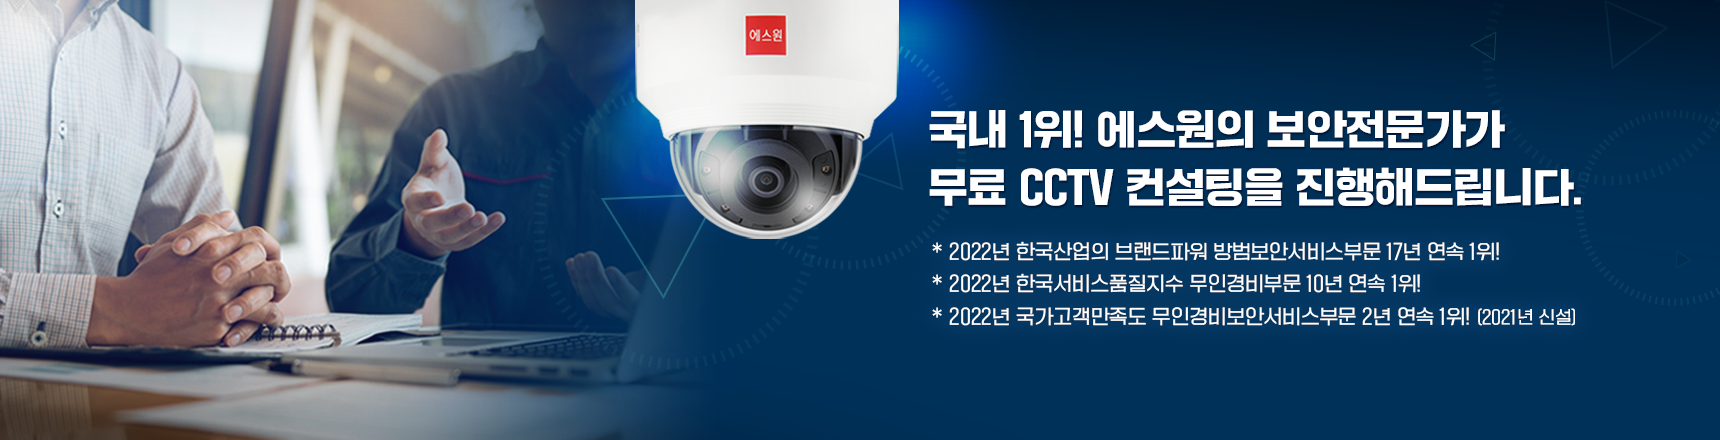 CCTV 컨설팅